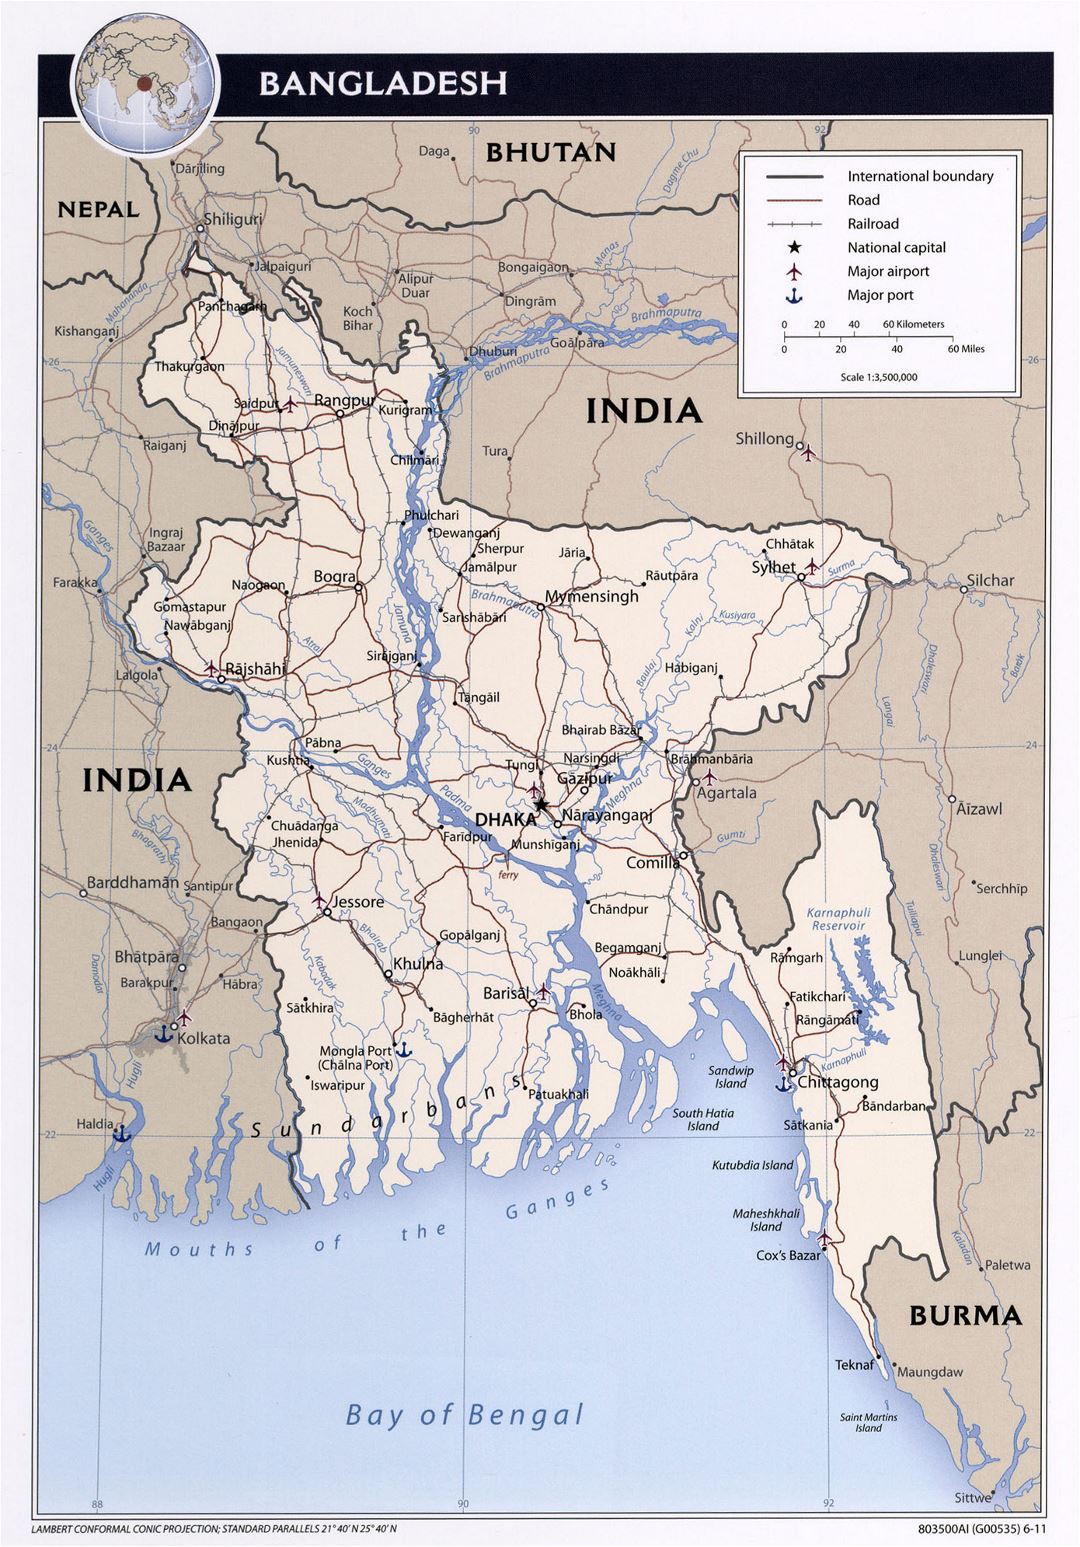 Grande detallado mapa político de Bangladesh con carreteras, ferrocarriles, principales ciudades y aeropuertos - 2011